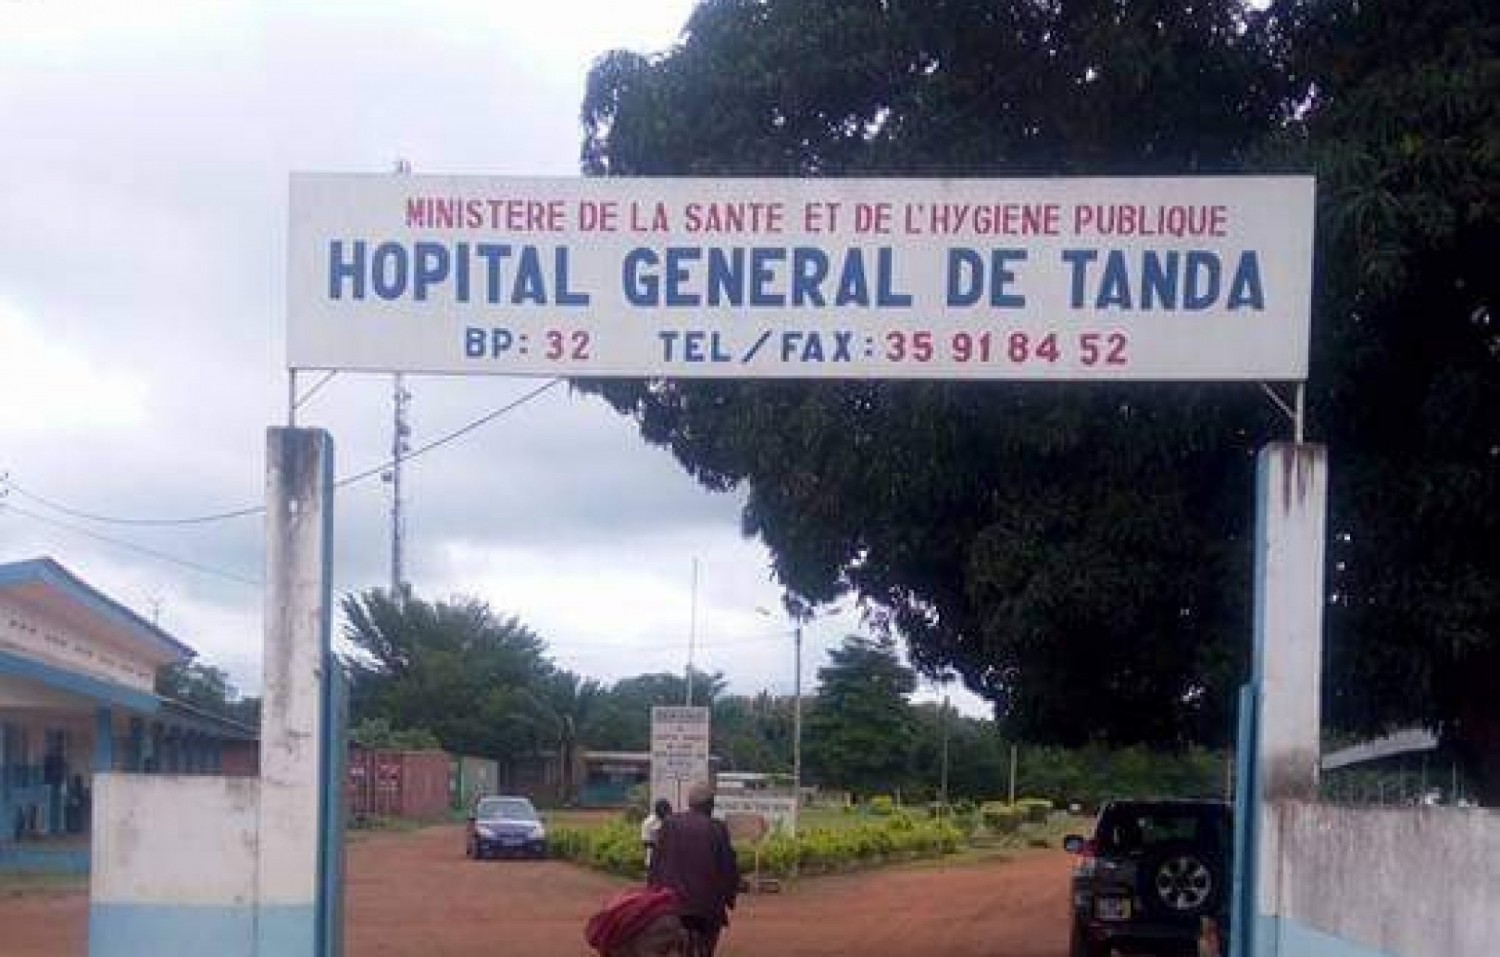 Côte d'Ivoire : Tanda, un jeune reçoit une décharge de calibre 12 dans la jambe après le vol d'un porc